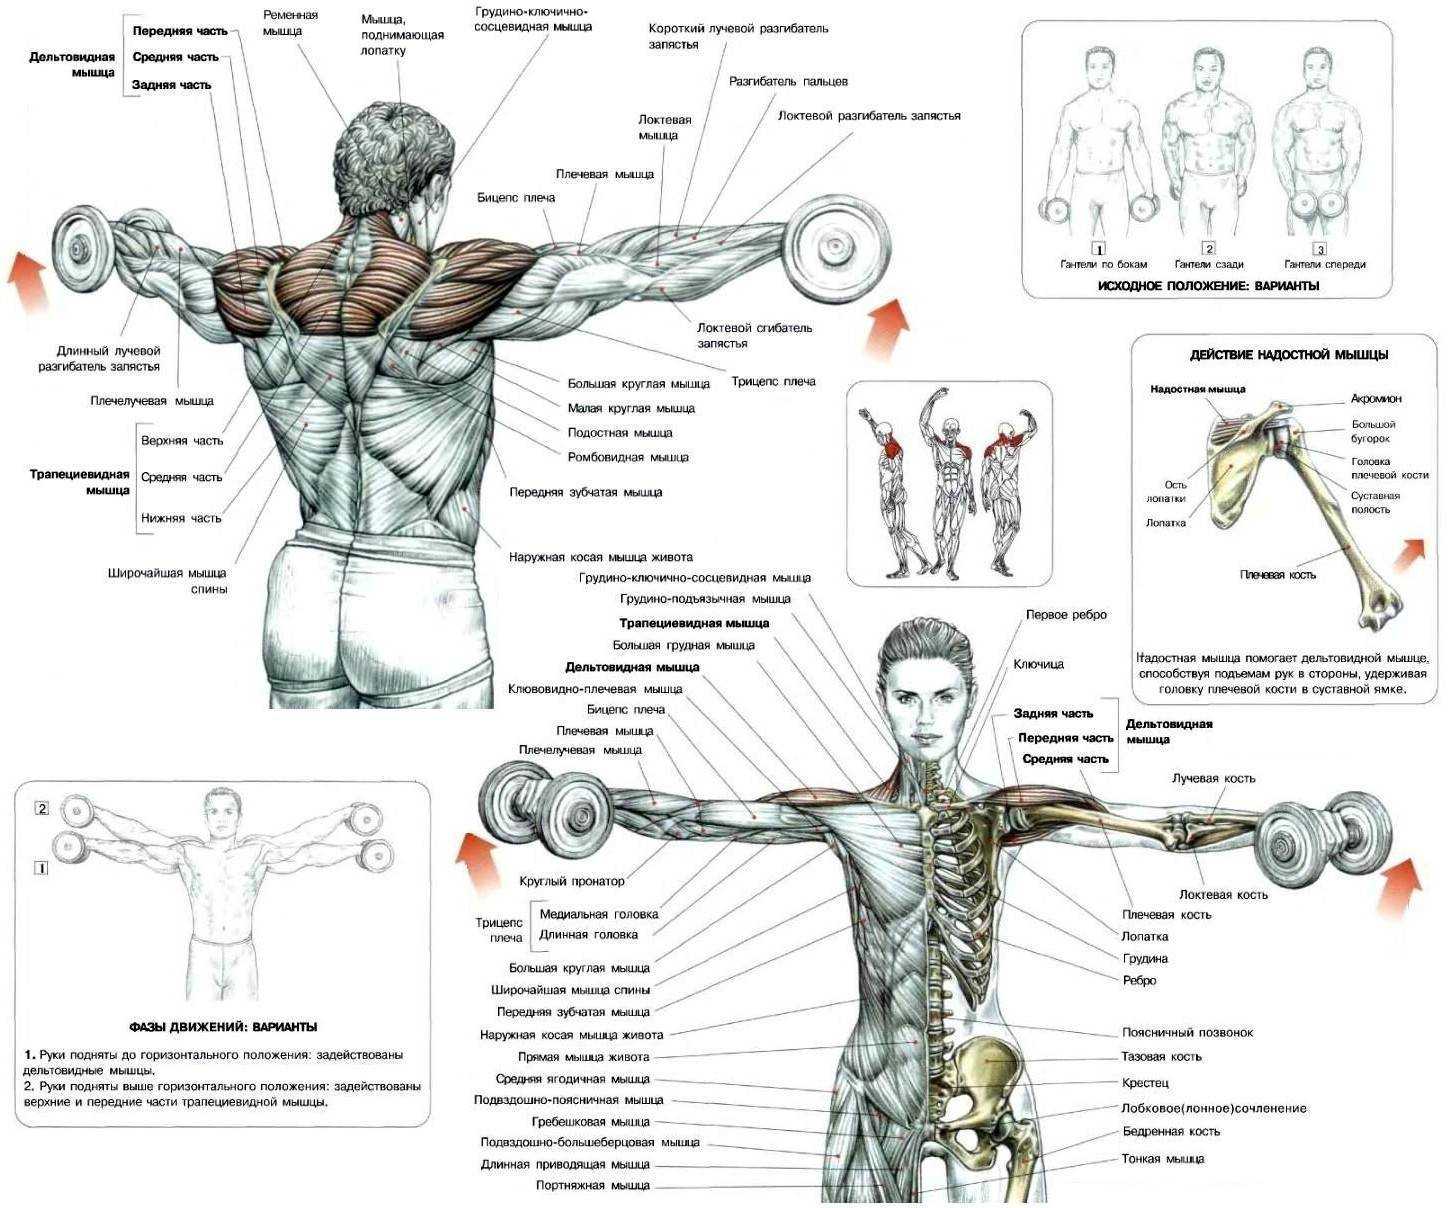 Мышцы плеча человека | анатомия мышц плеча, строение, функции, картинки на eurolab